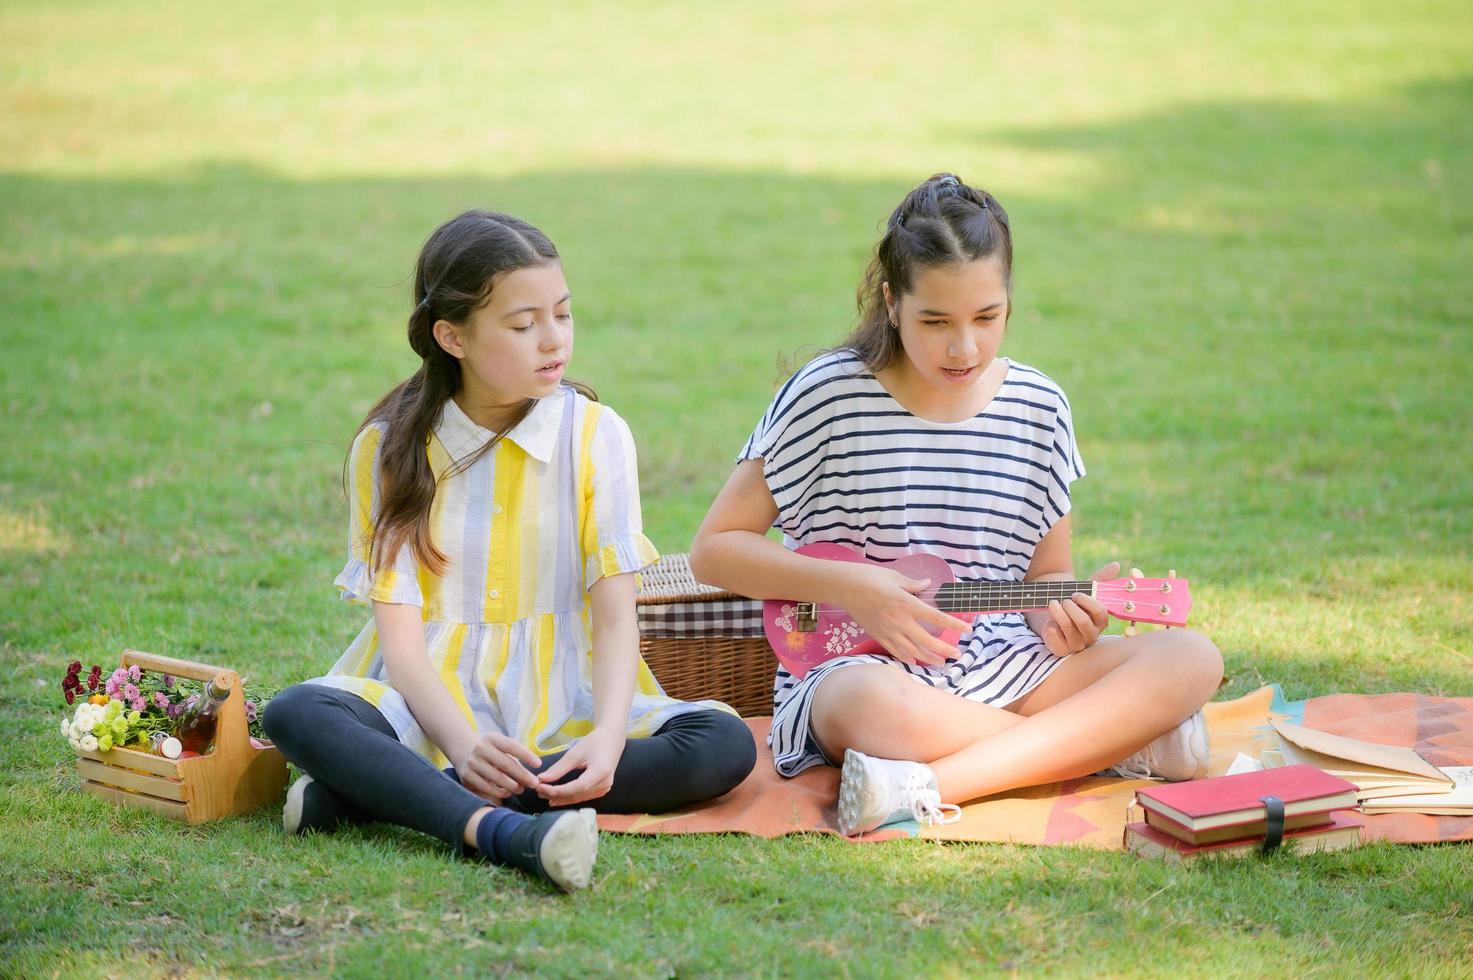 dos chicas tailandesas europeas se sientan en el ukelele y cantan mientras hacen un picnic en el parque foto